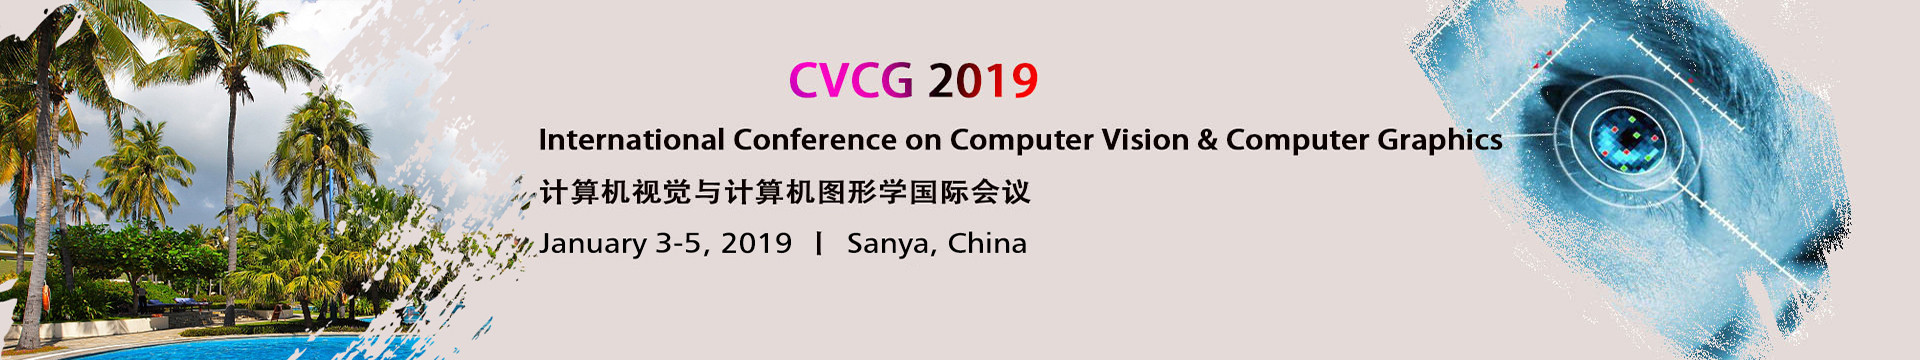 计算机视觉与计算机图形学国际会议(CVCG 2019)